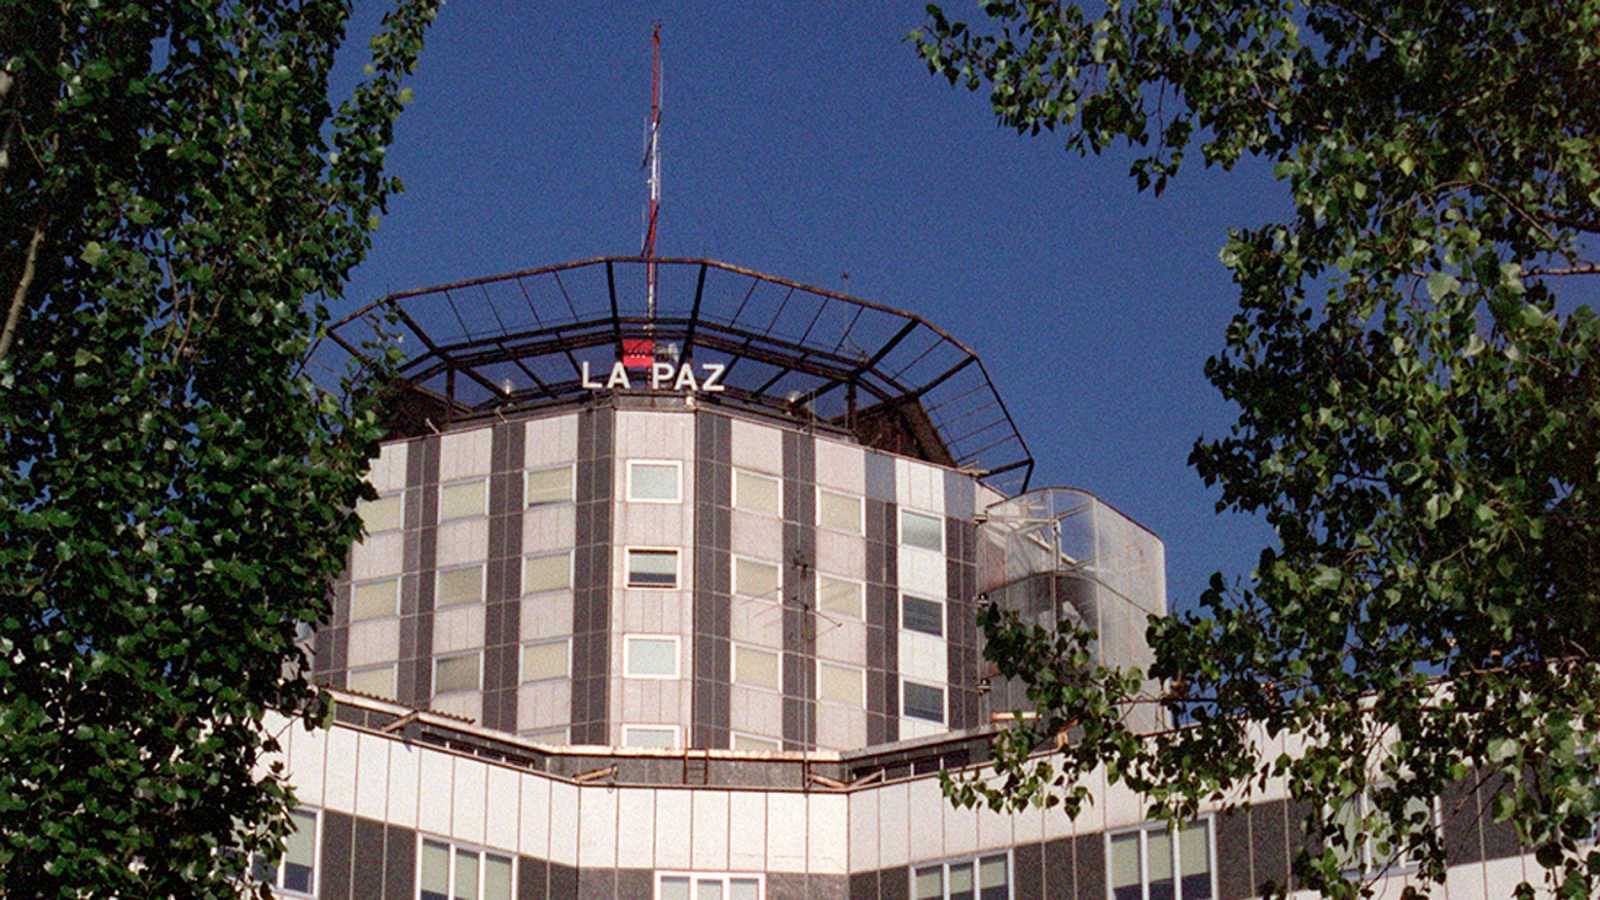 El Hospital madrileño de La Paz realiza el estudio de pacientes con coronavirus más importante de Europa - RTVE.es